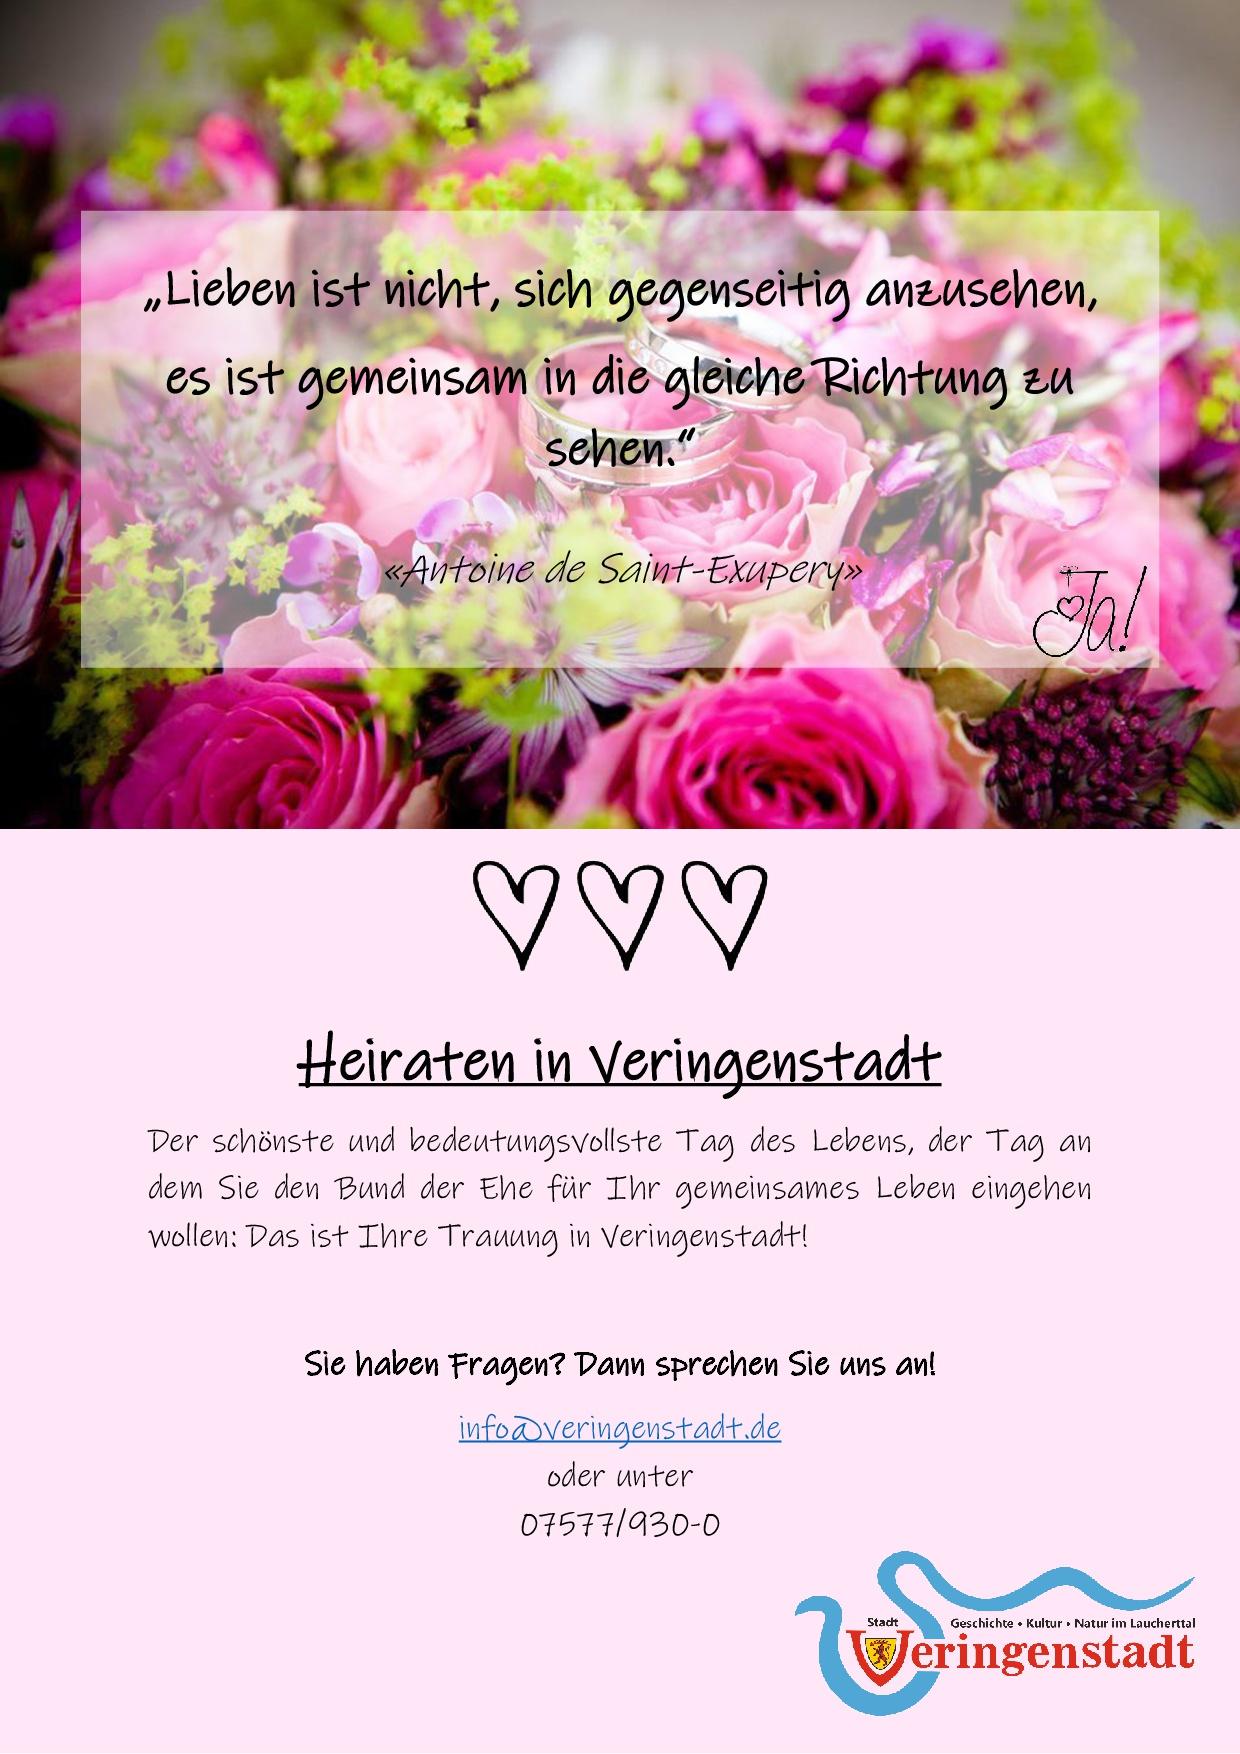 Heiraten in Veringenstadt